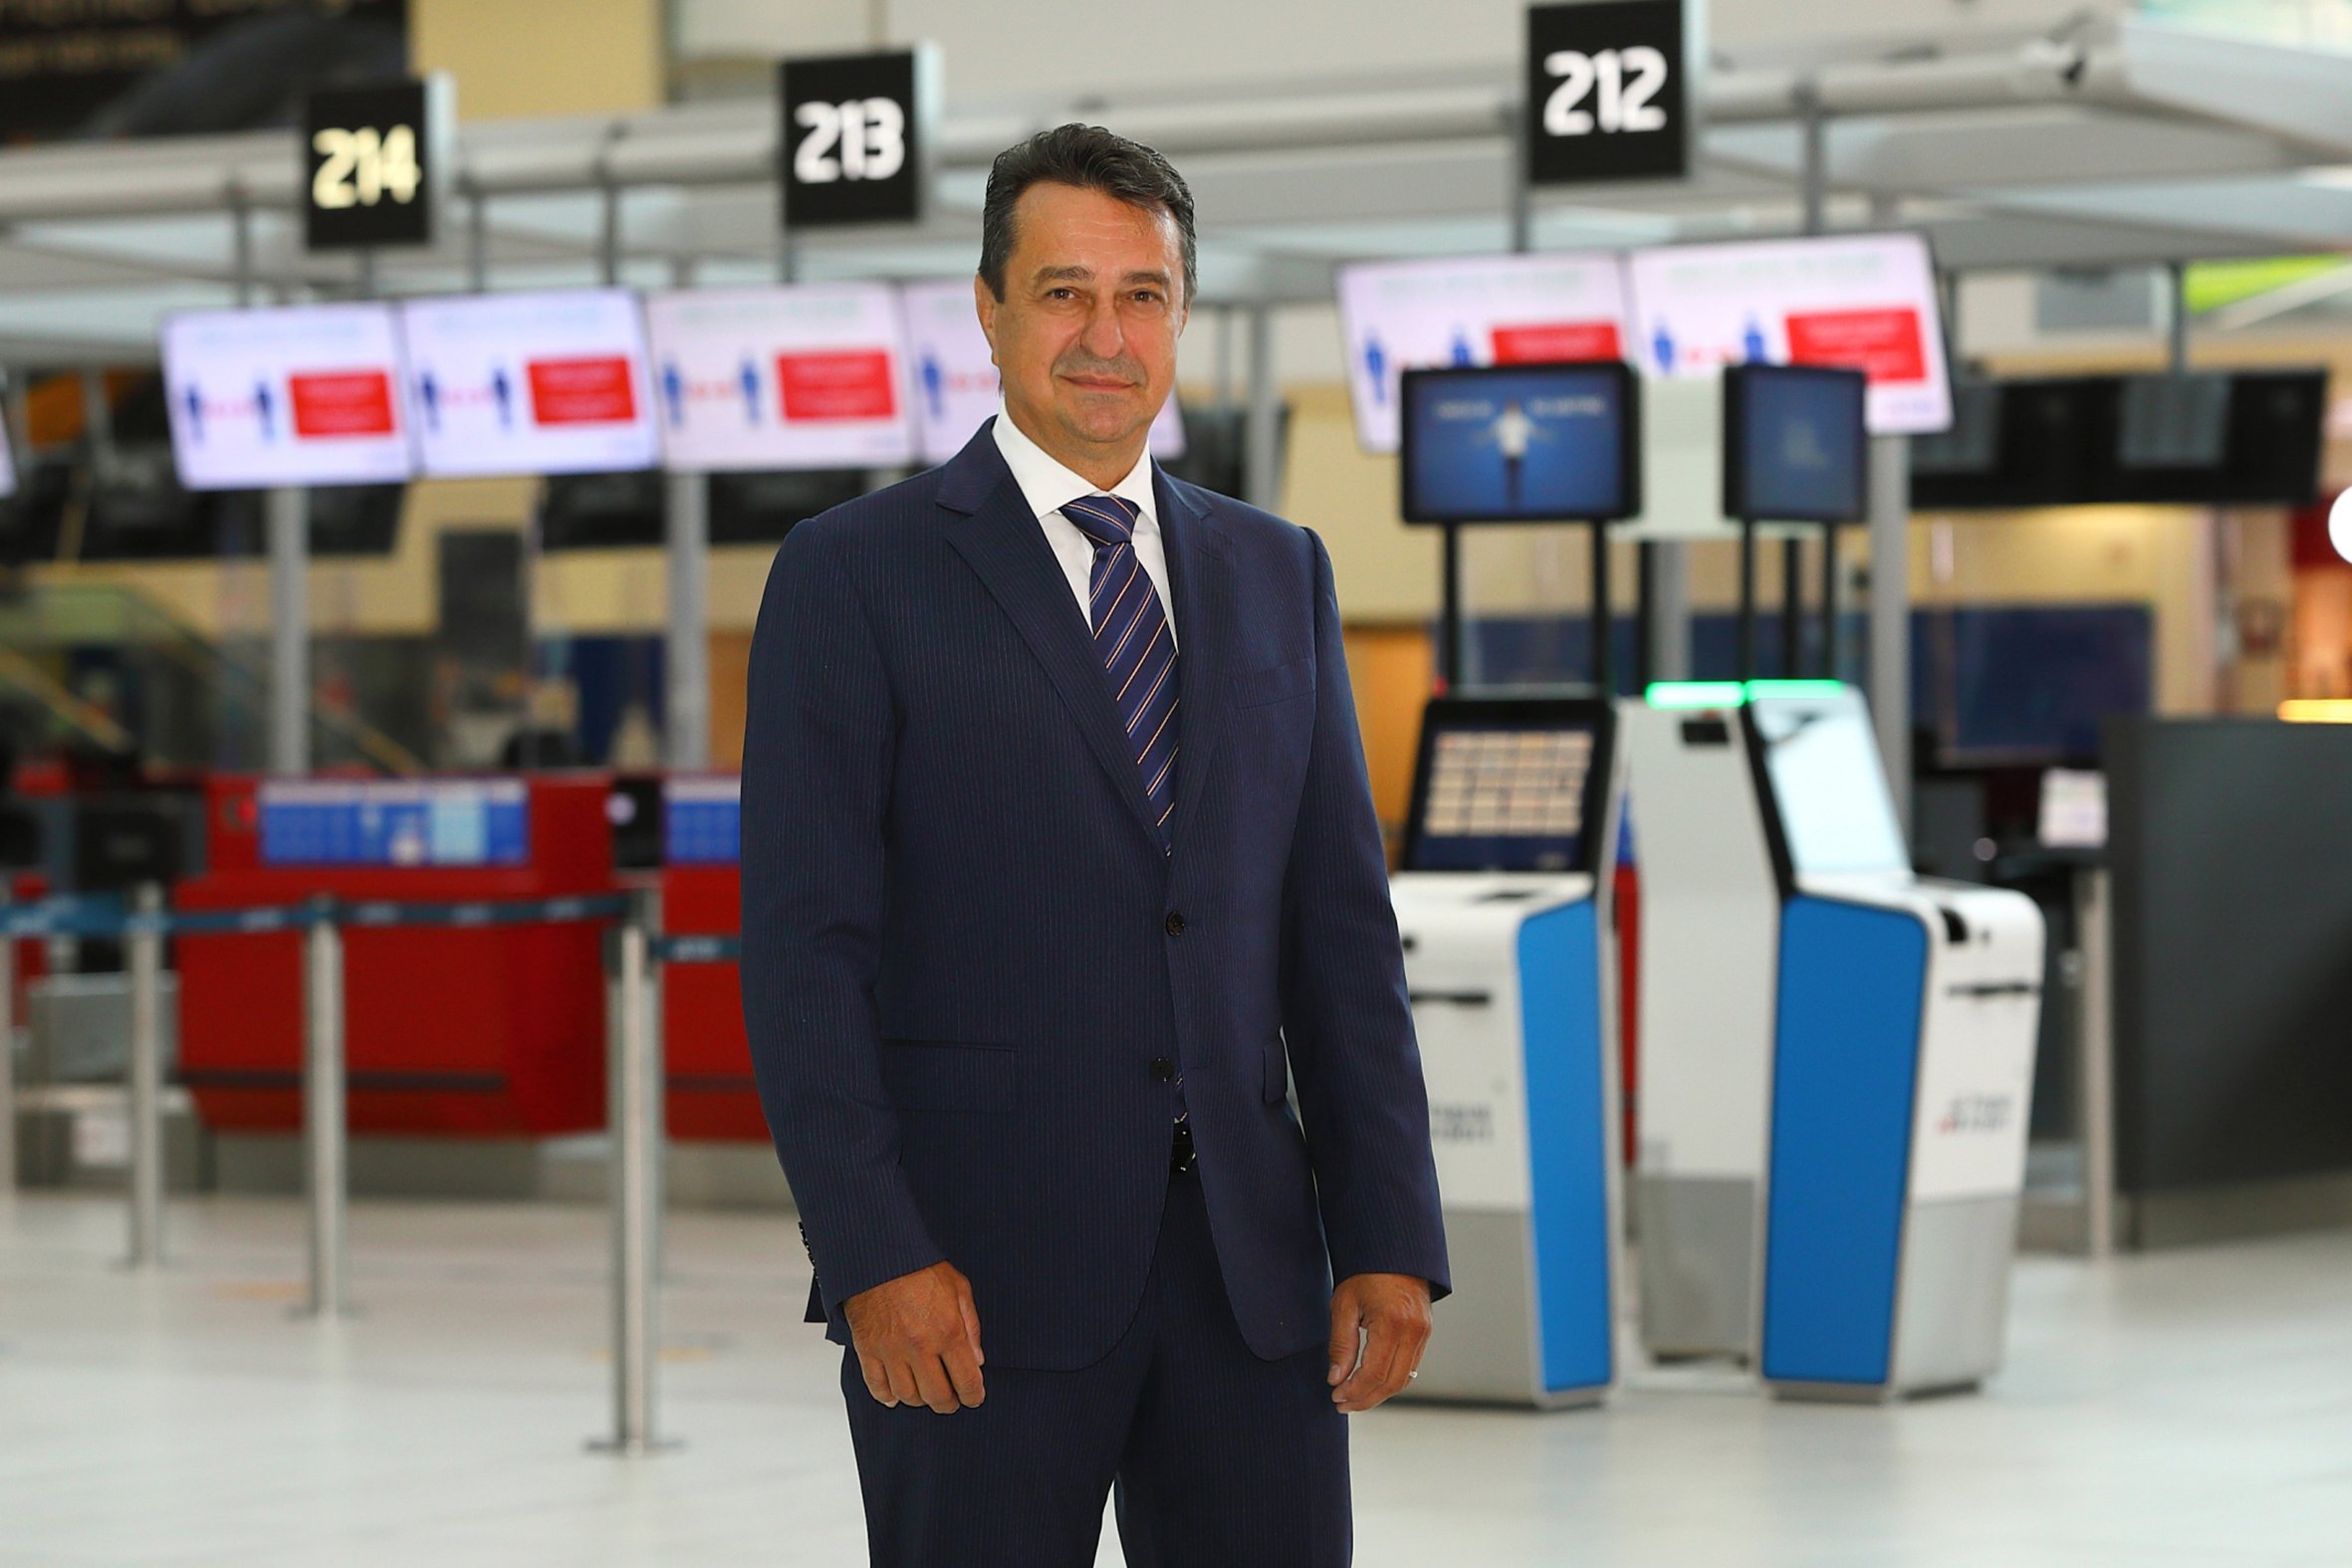 Styret i Praha lufthavn velger ny leder